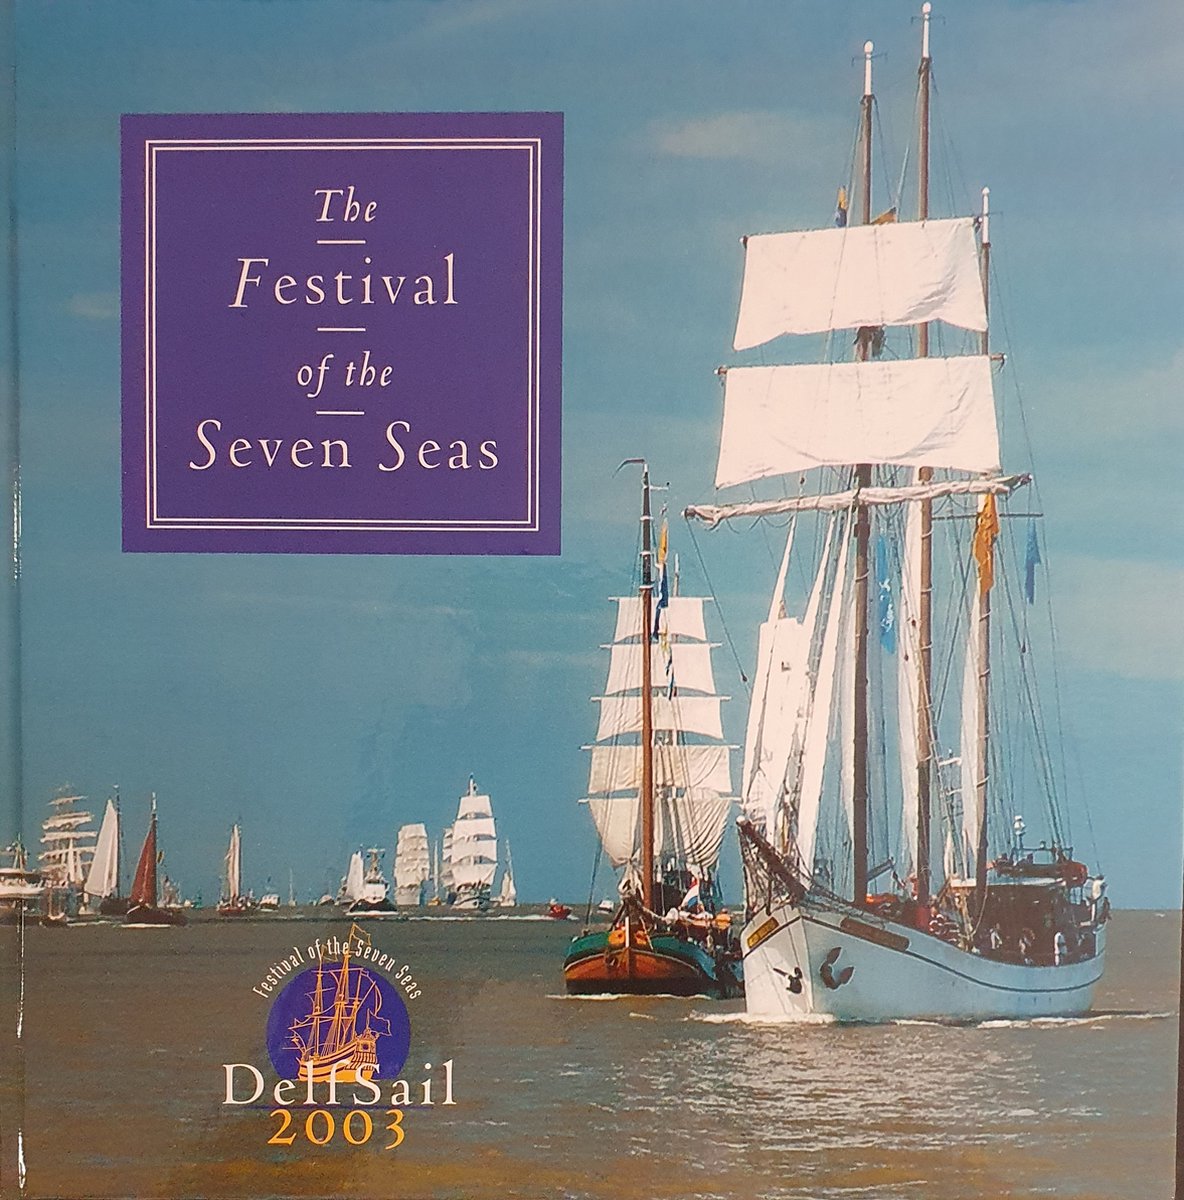 The Festival of the Seven Seas